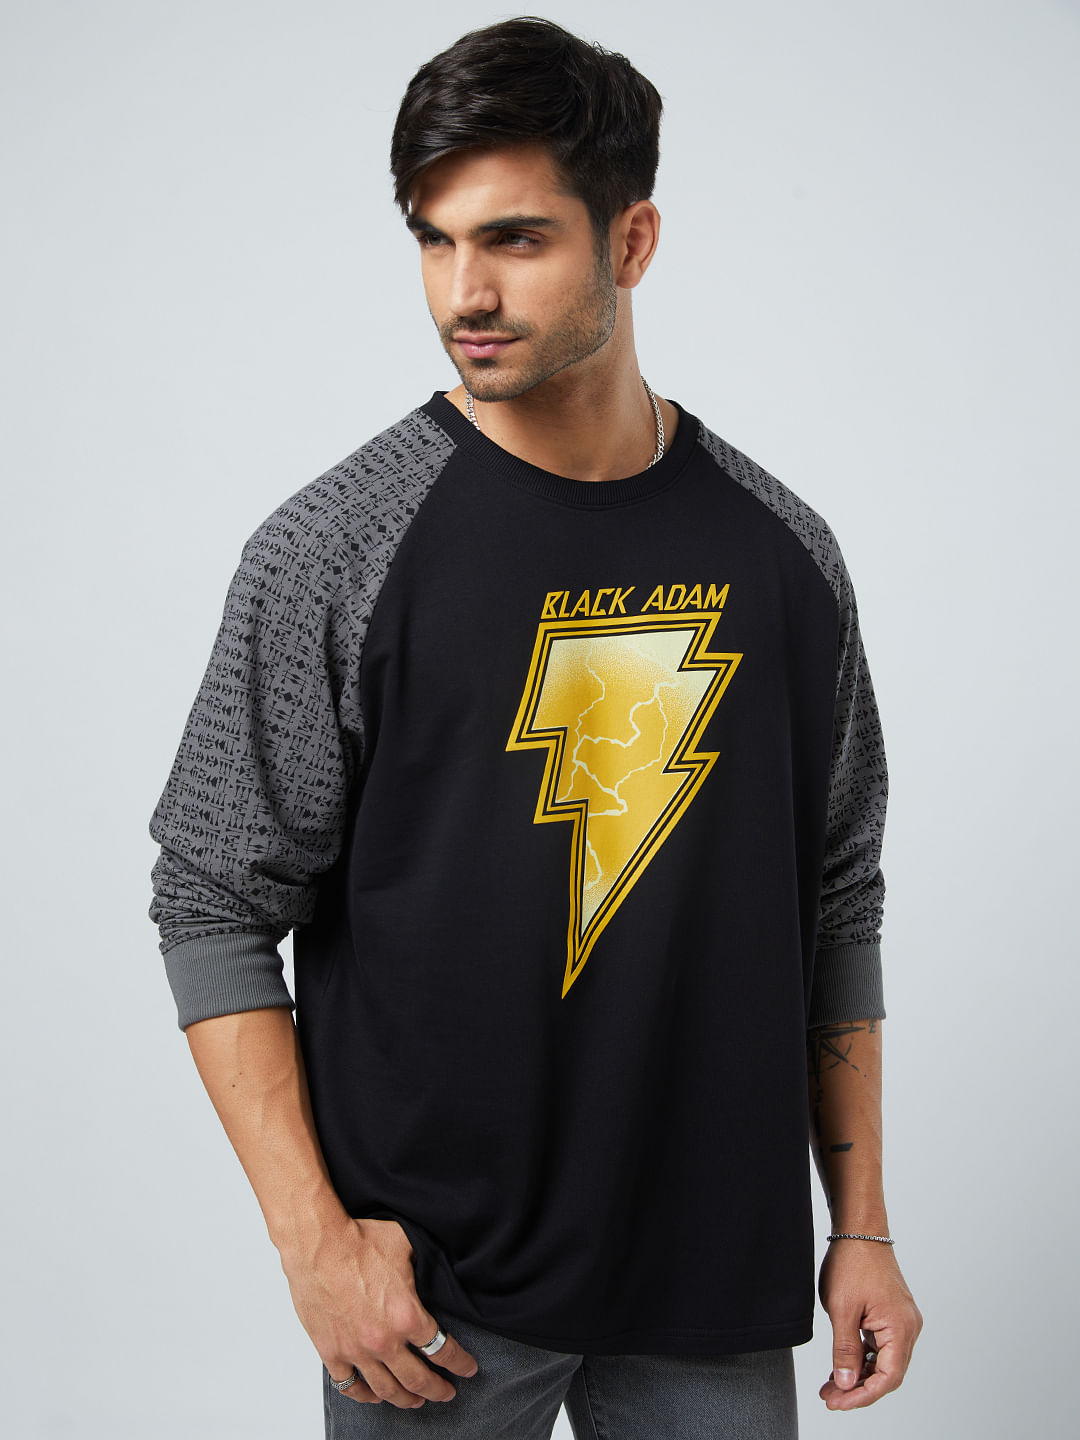 Buy Black Adam: Logo (Raglan) Oversized Full Sleeve T-Shirt Online